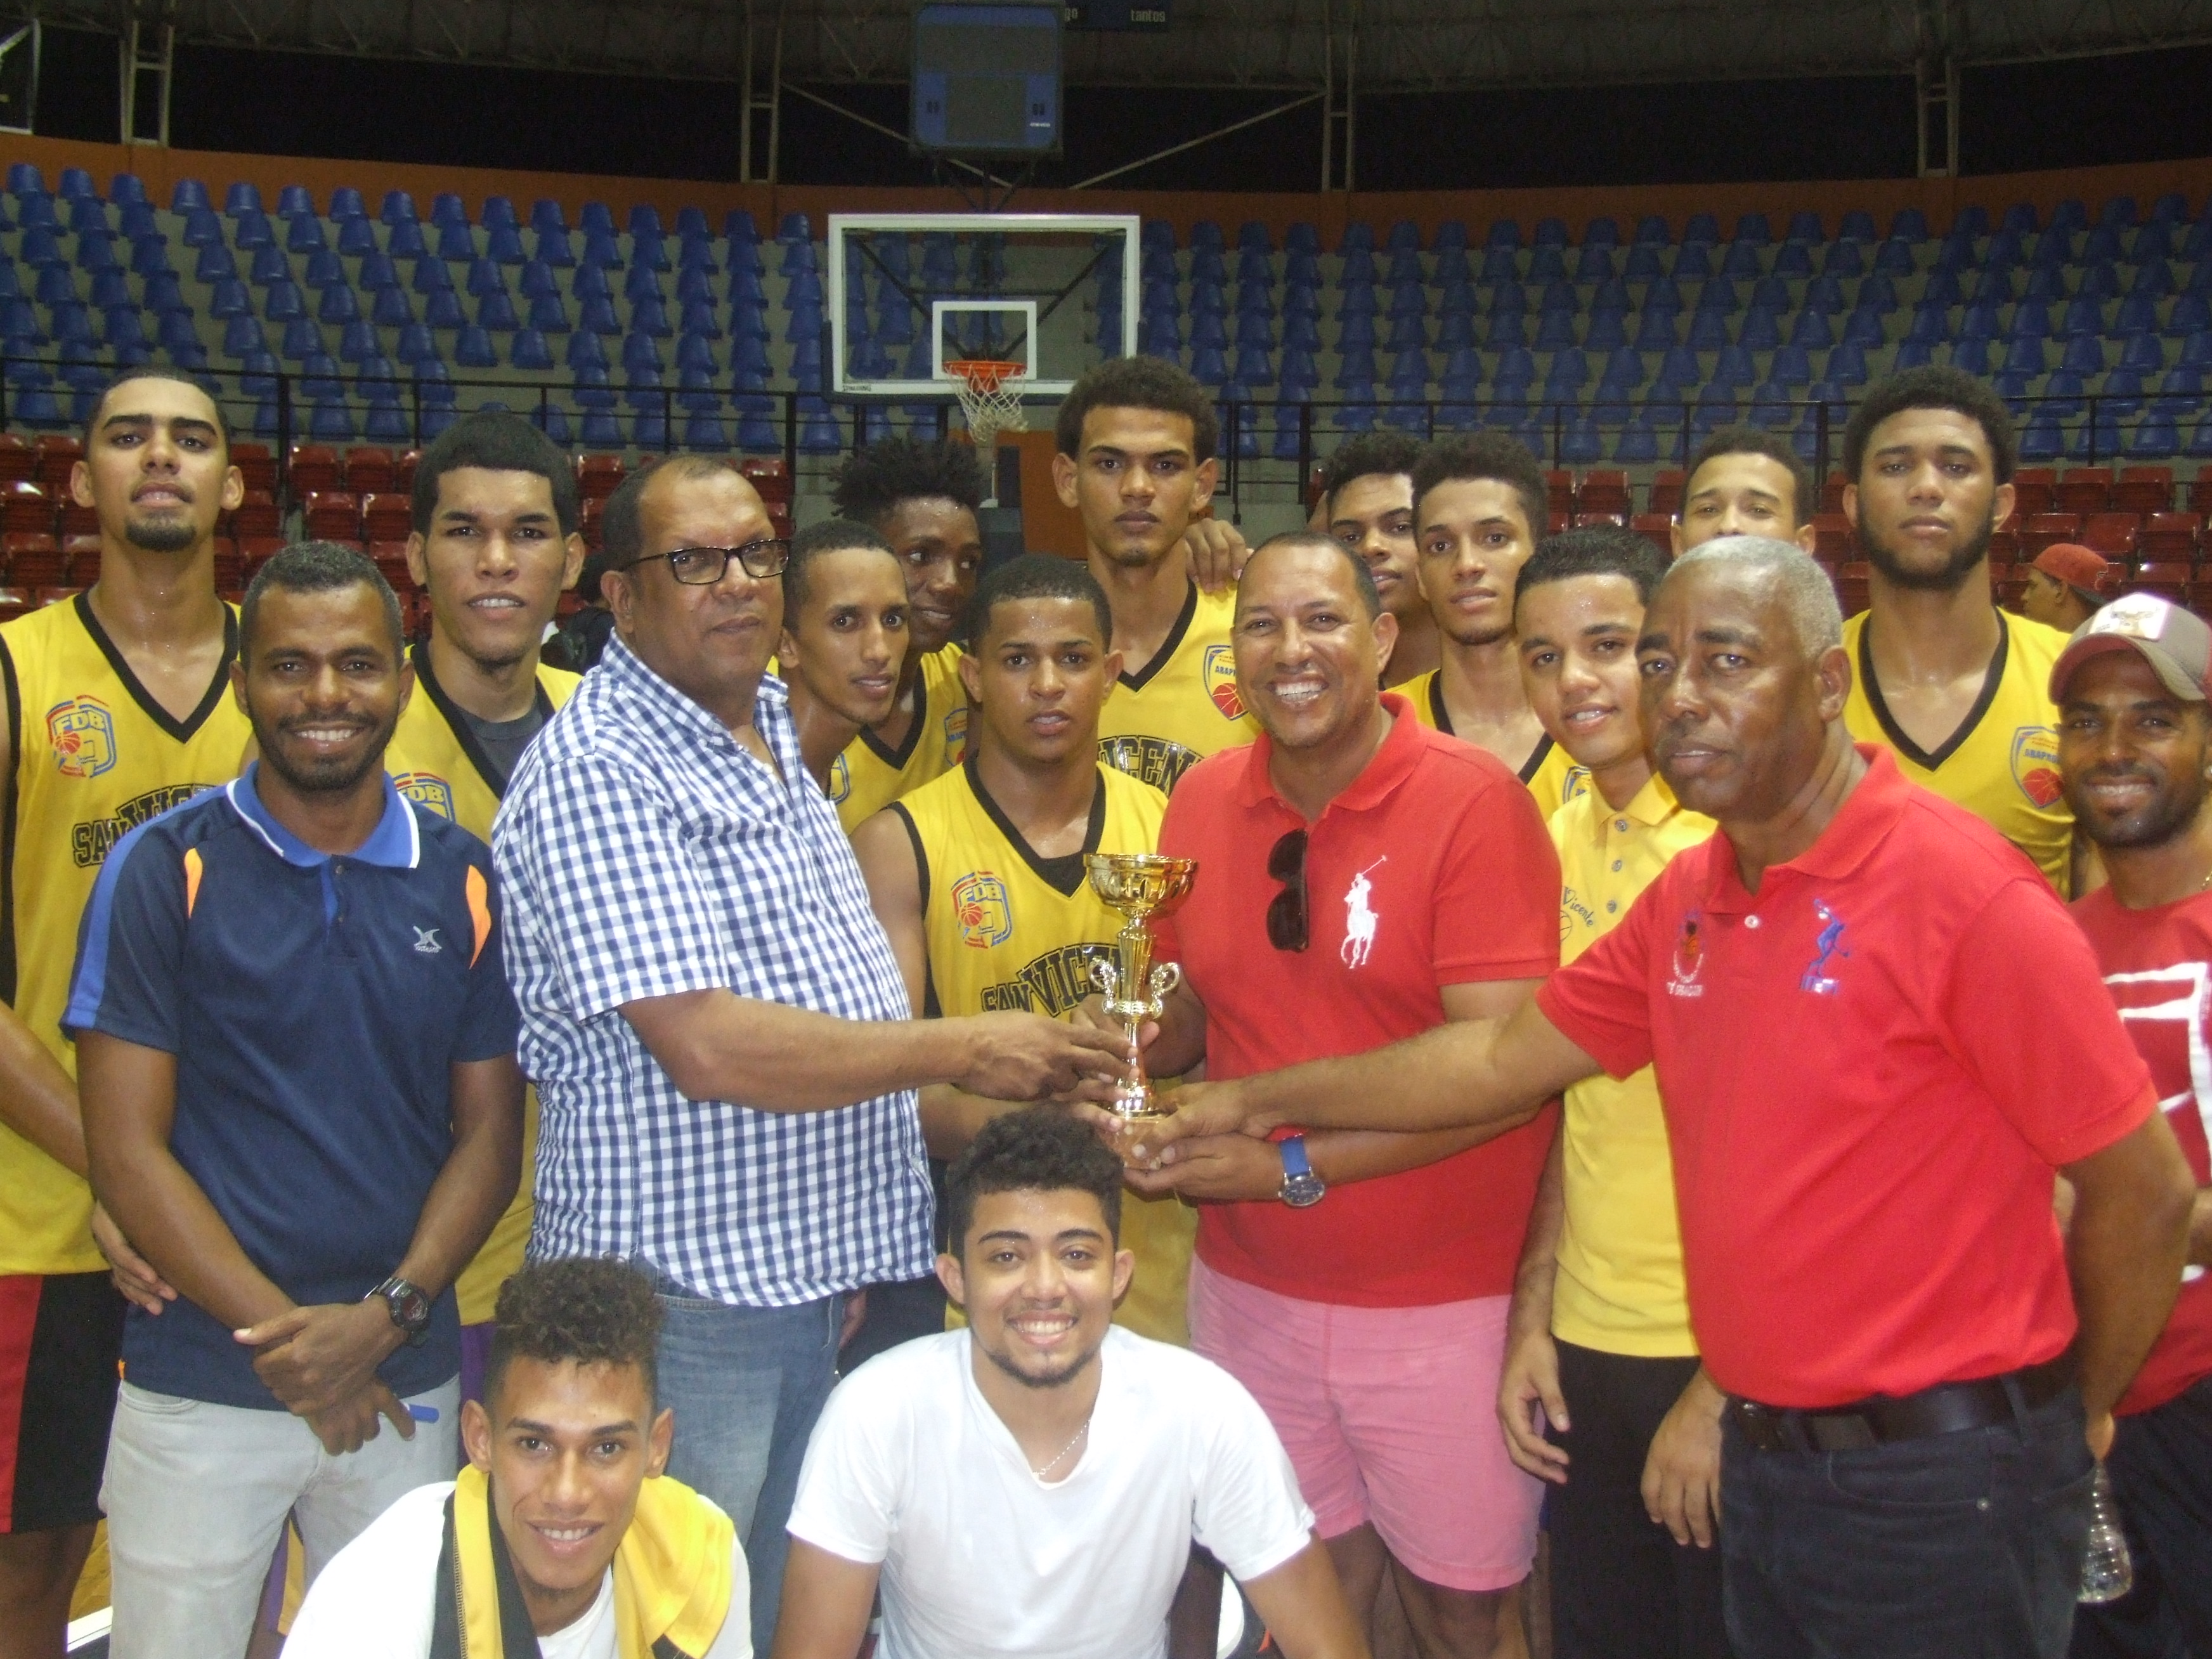  Club San Vicente campeón torneo baloncesto sub 22 provincia Duarte